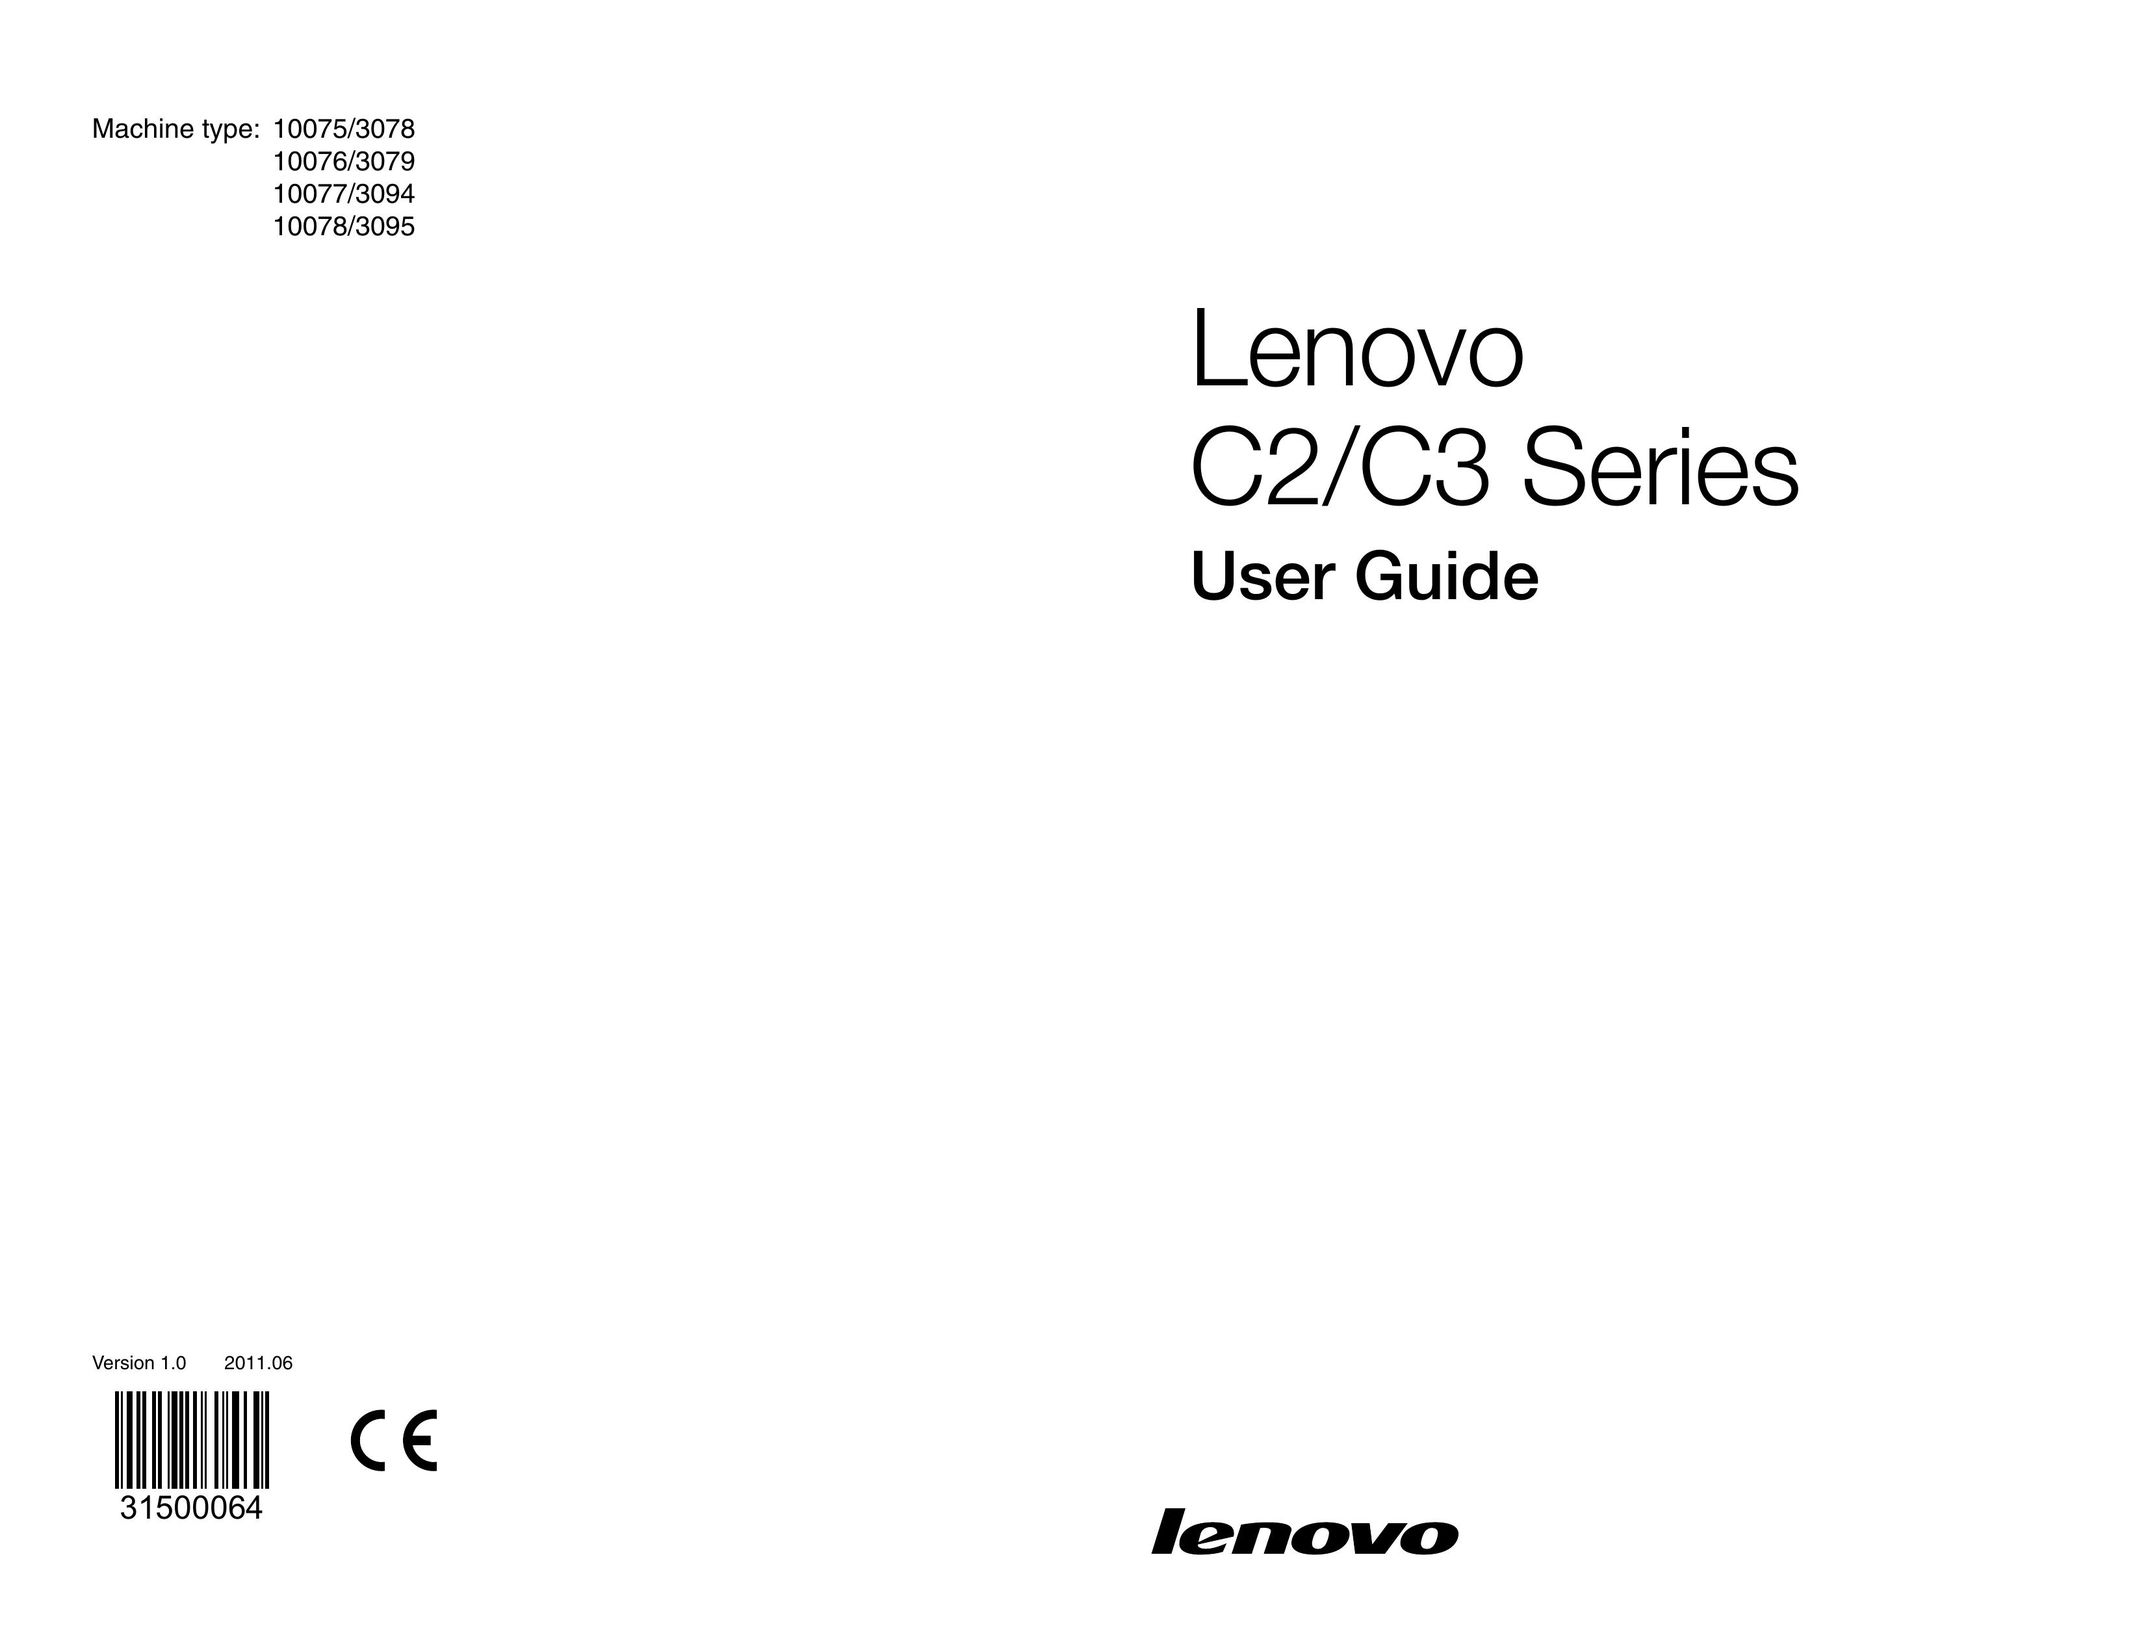 Lenovo 10076/3079 Laptop User Manual